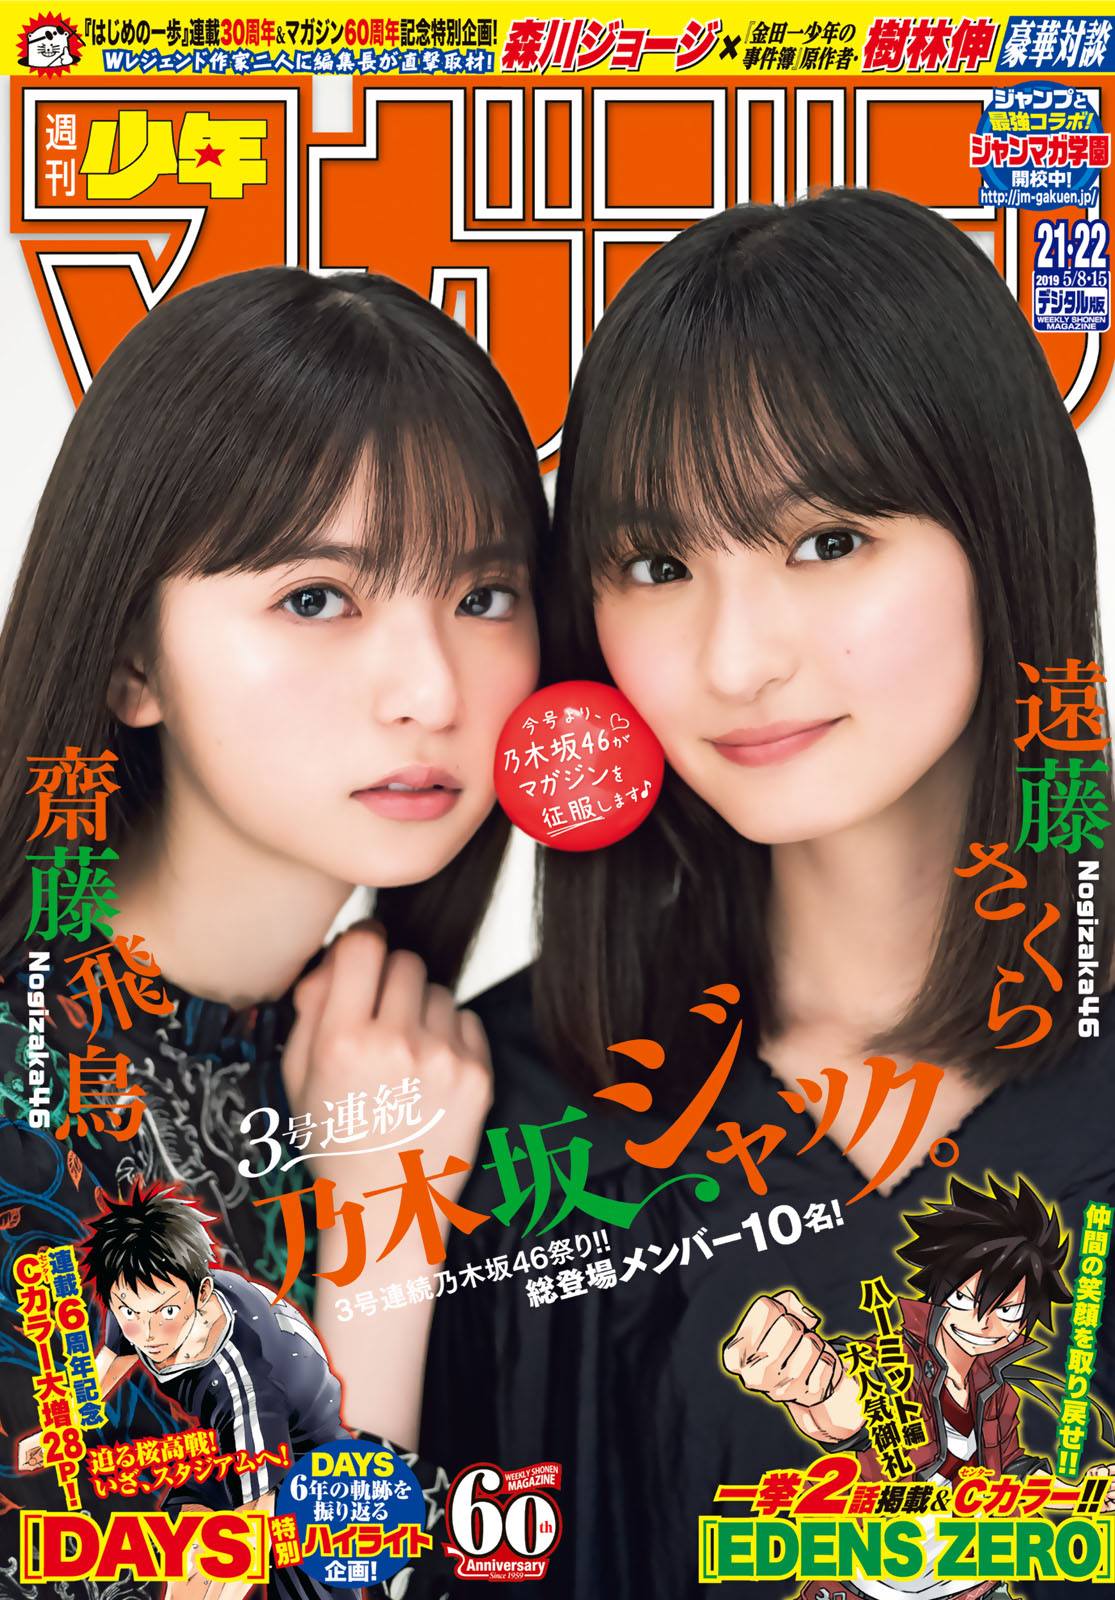 Asuka Saito 齋藤飛鳥, Sakura Endo 遠藤さくら, Shonen Magazine 2019 No.21-22 (少年マガジン 2019年21-22号)